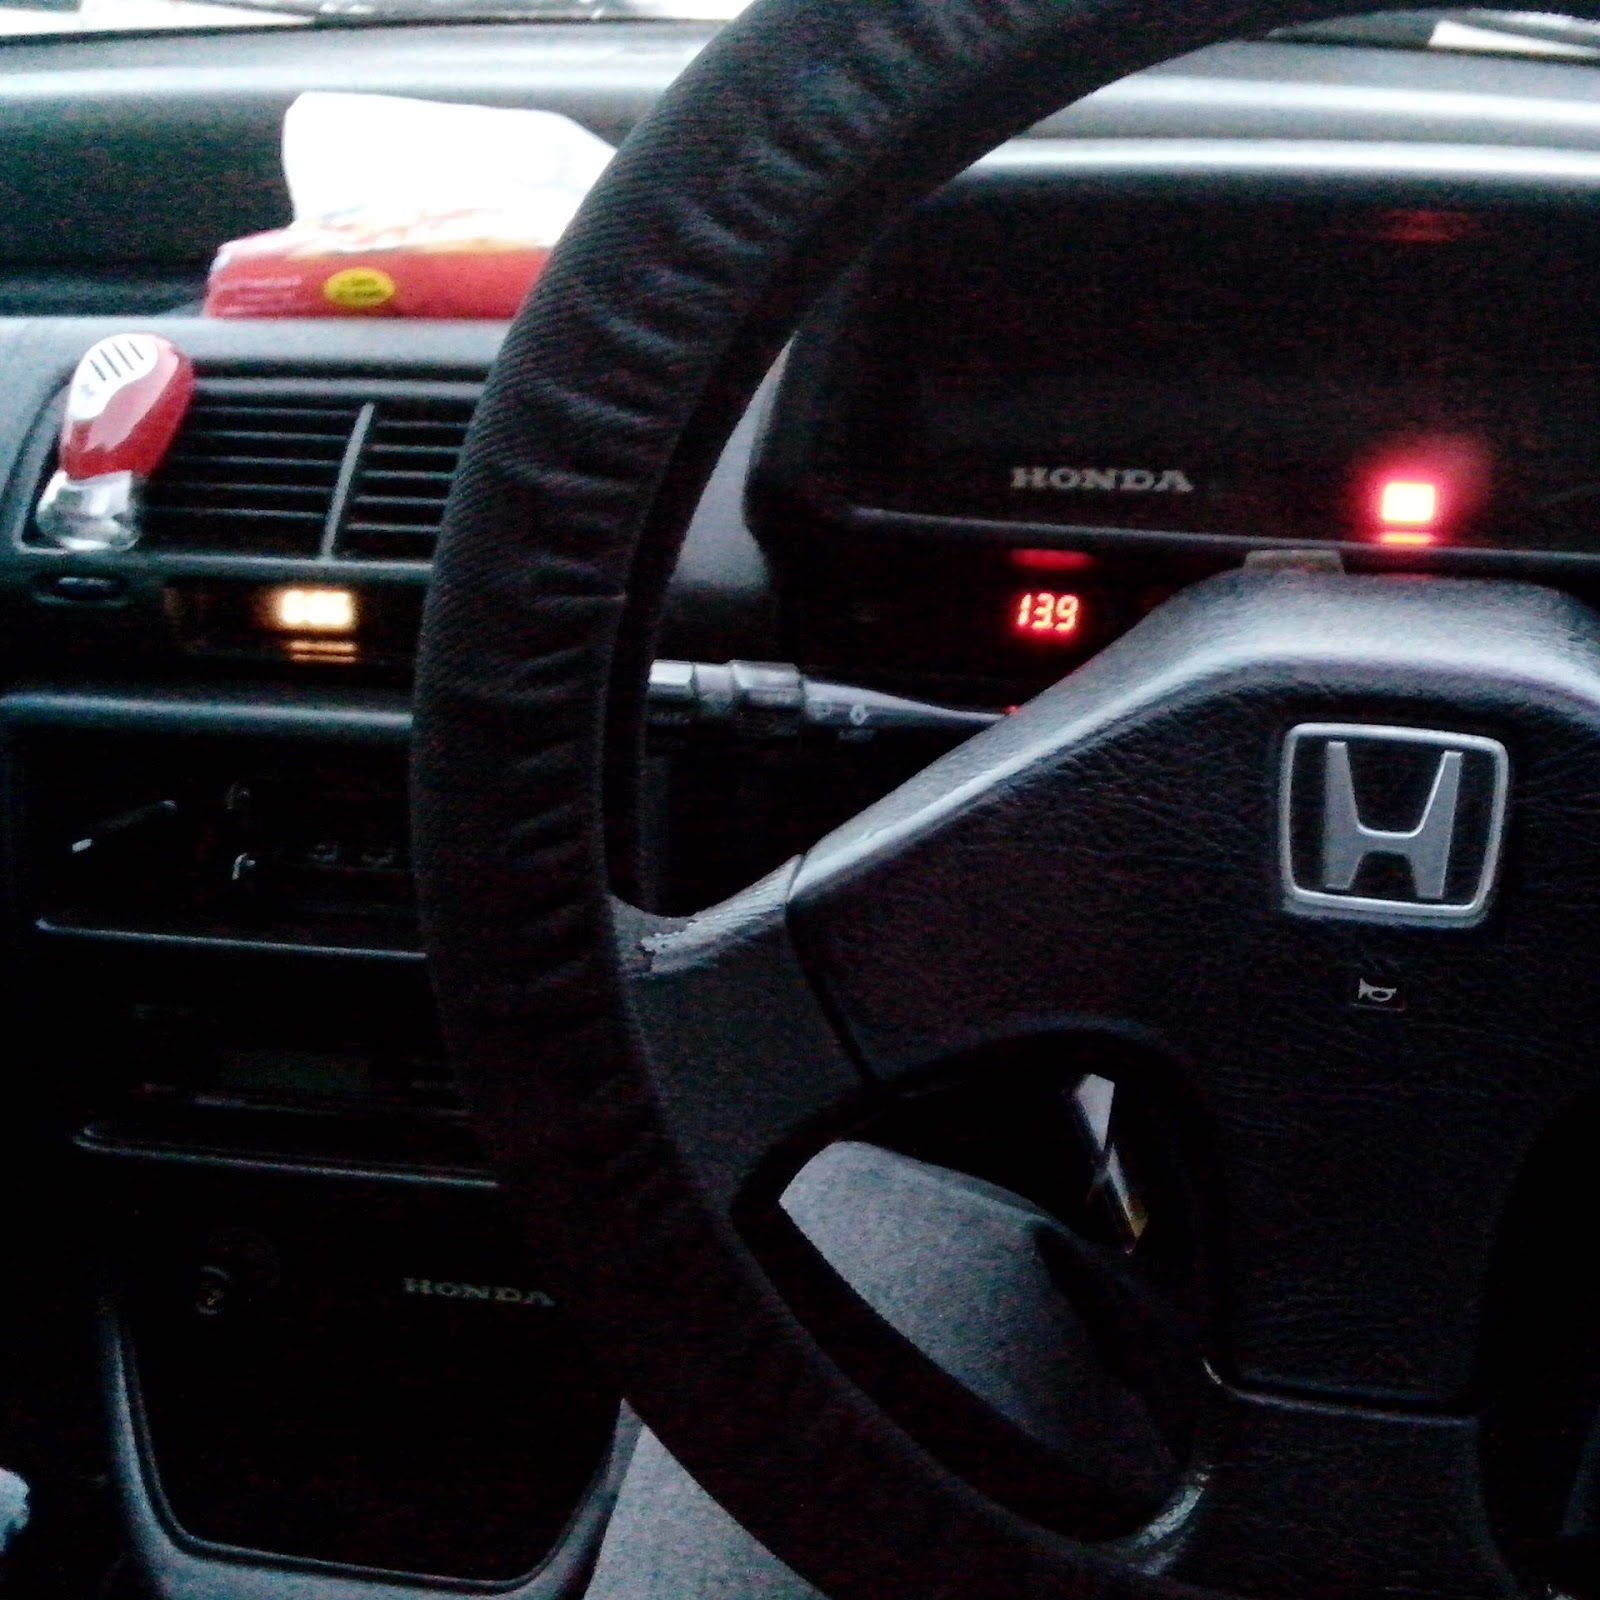  DIJUAL  Honda  Nouva  1988 Grand Civic 2 Pintu LAPAK MOBIL  